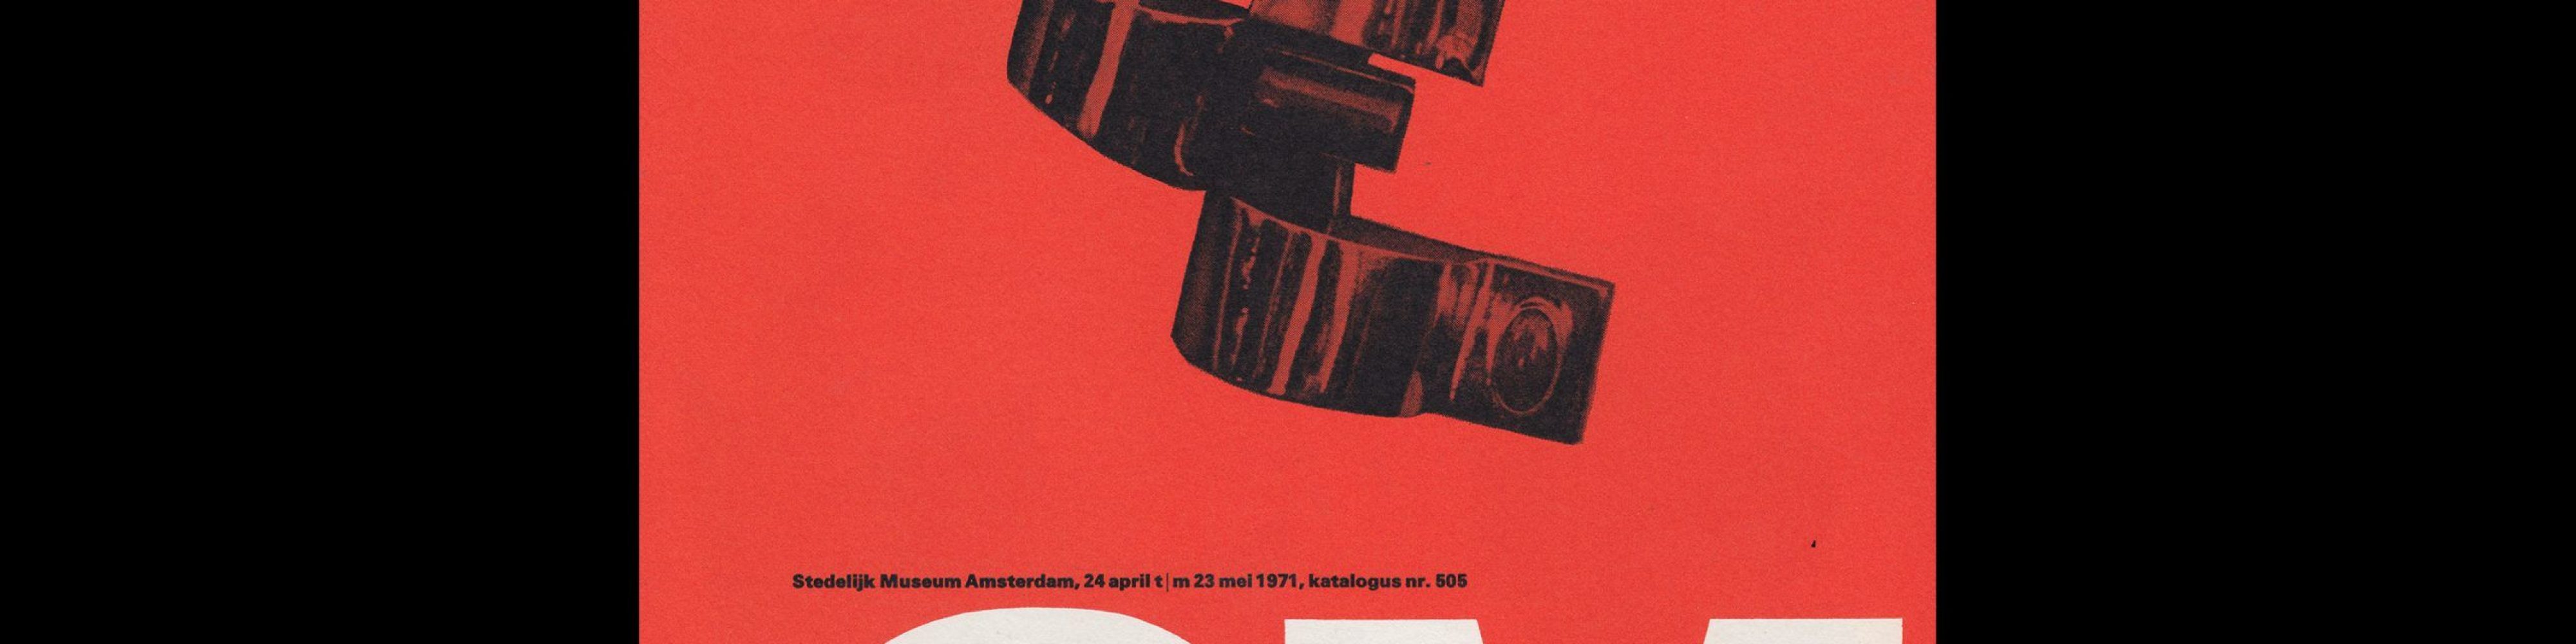 Manette van Hamel-, Stedelijk Museum, Amsterdam, 1971 designed by Wim Crouwel and Magda Tsfaty (Total Design)